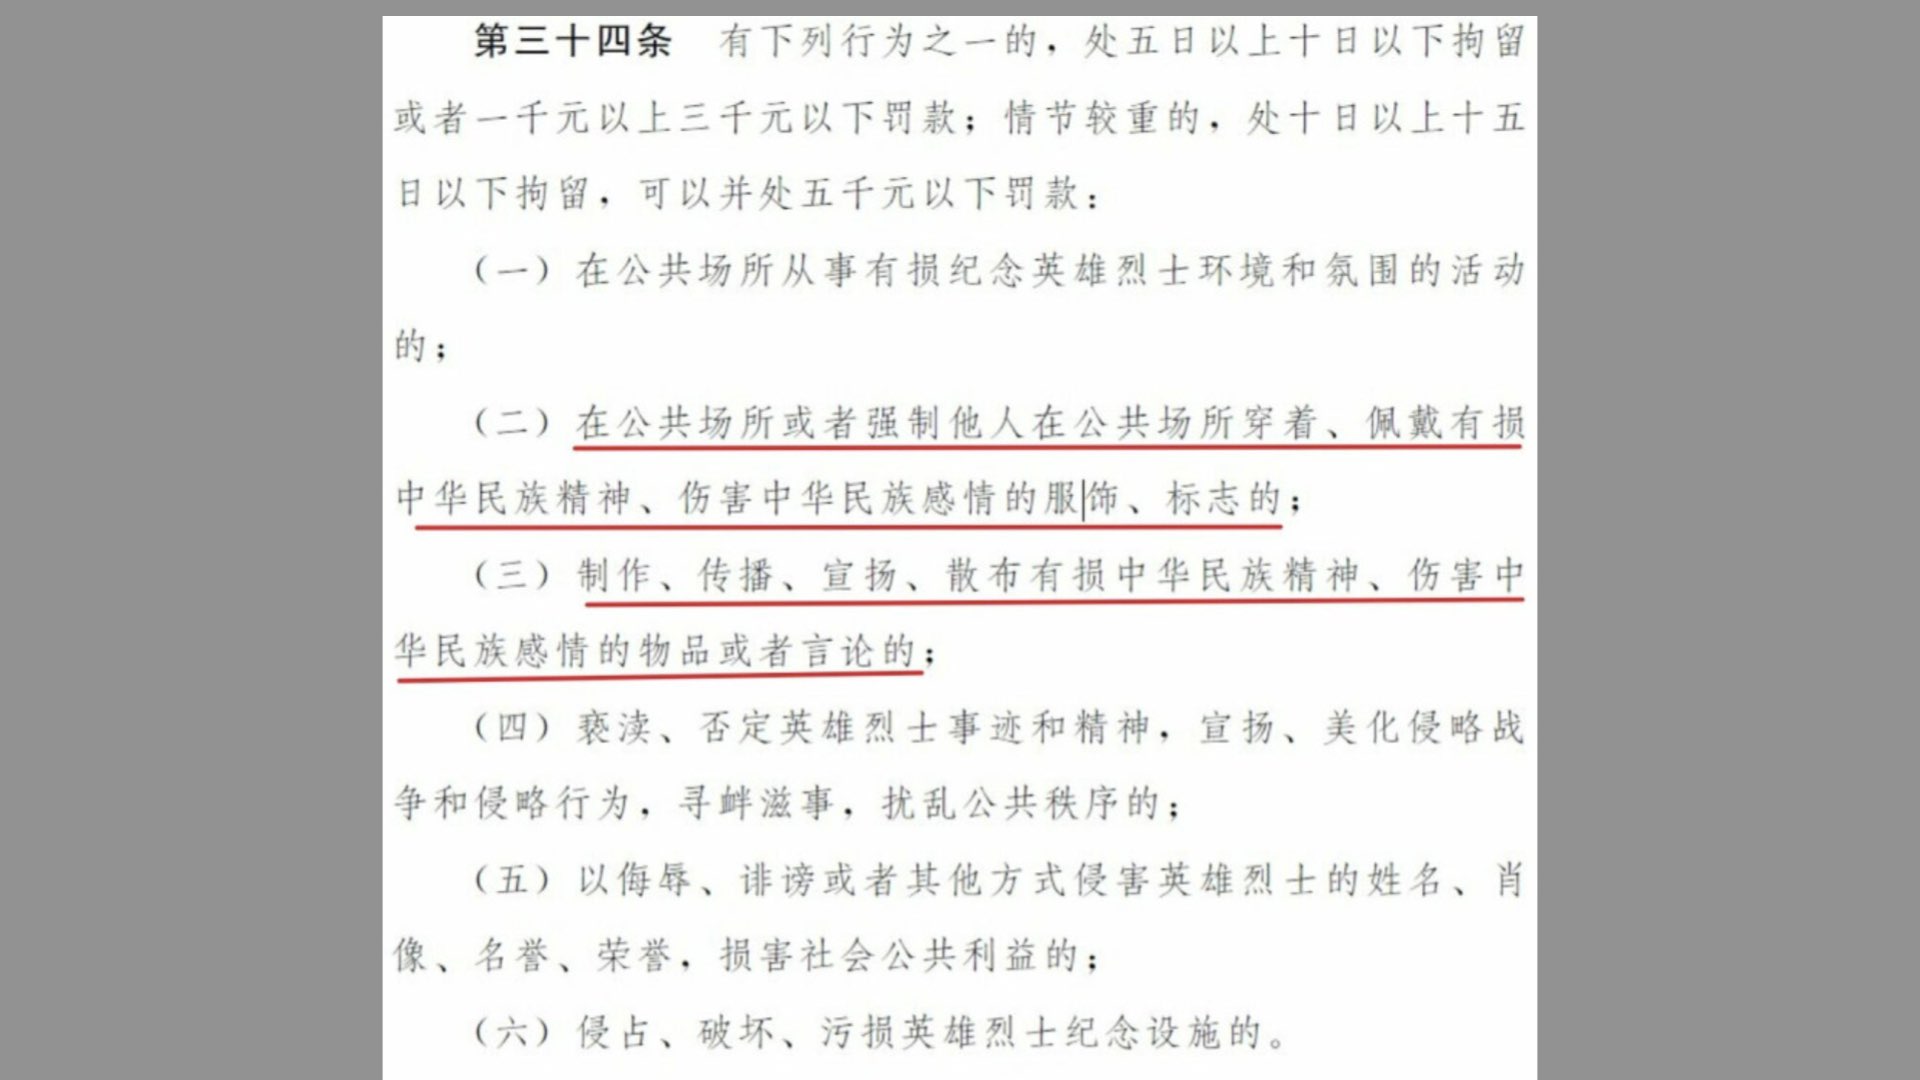 中共新公布的《治安管理处罚法（修订草案）》